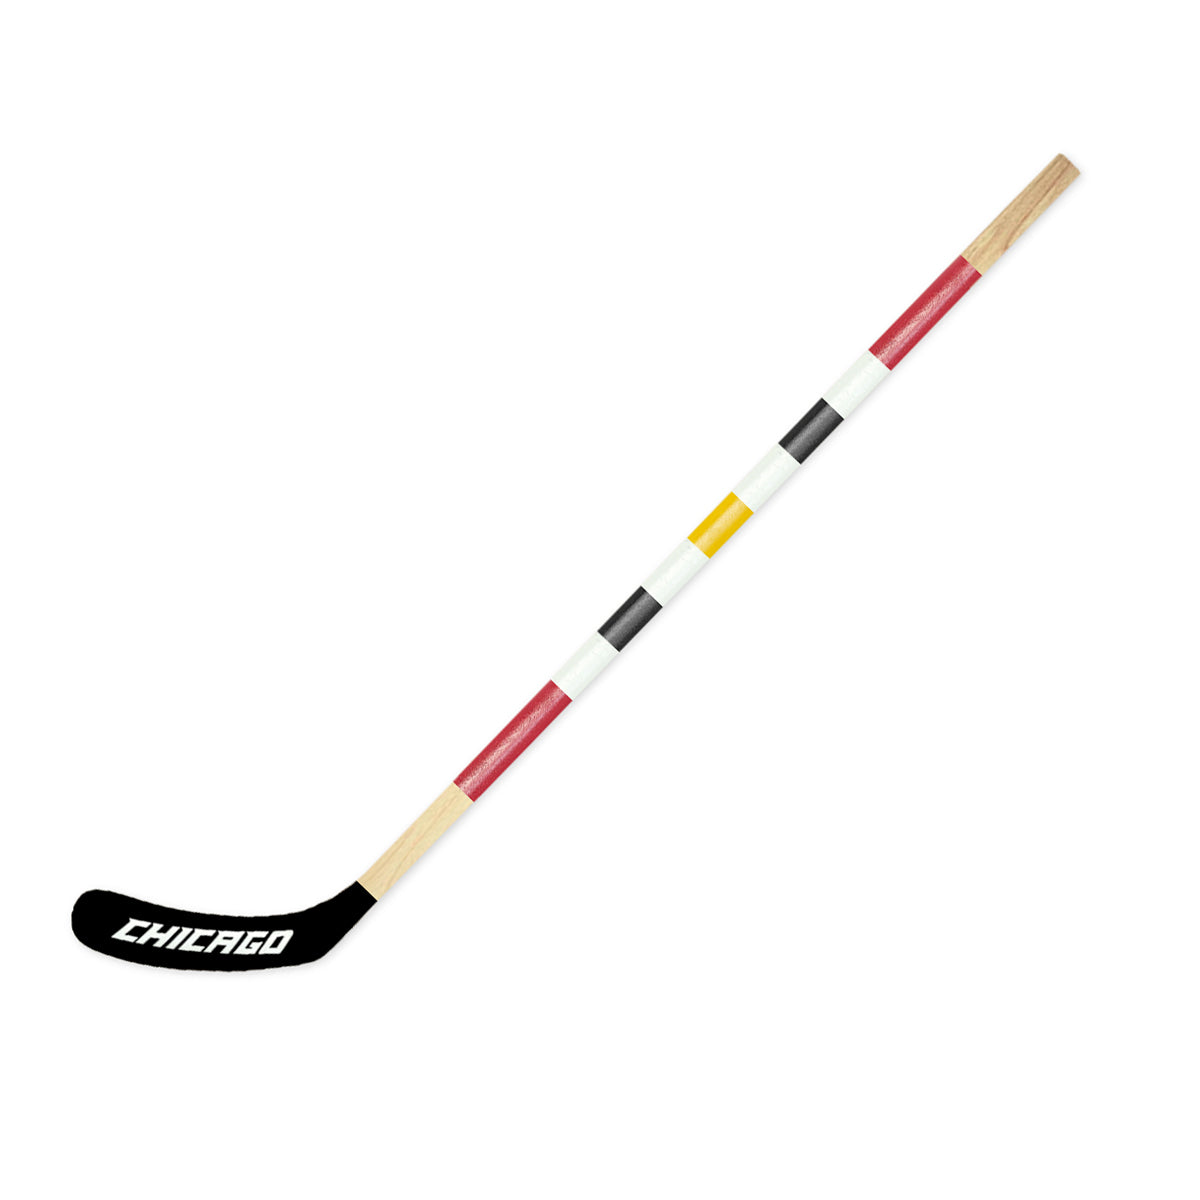 Chicago Mitchell Hockey Stick